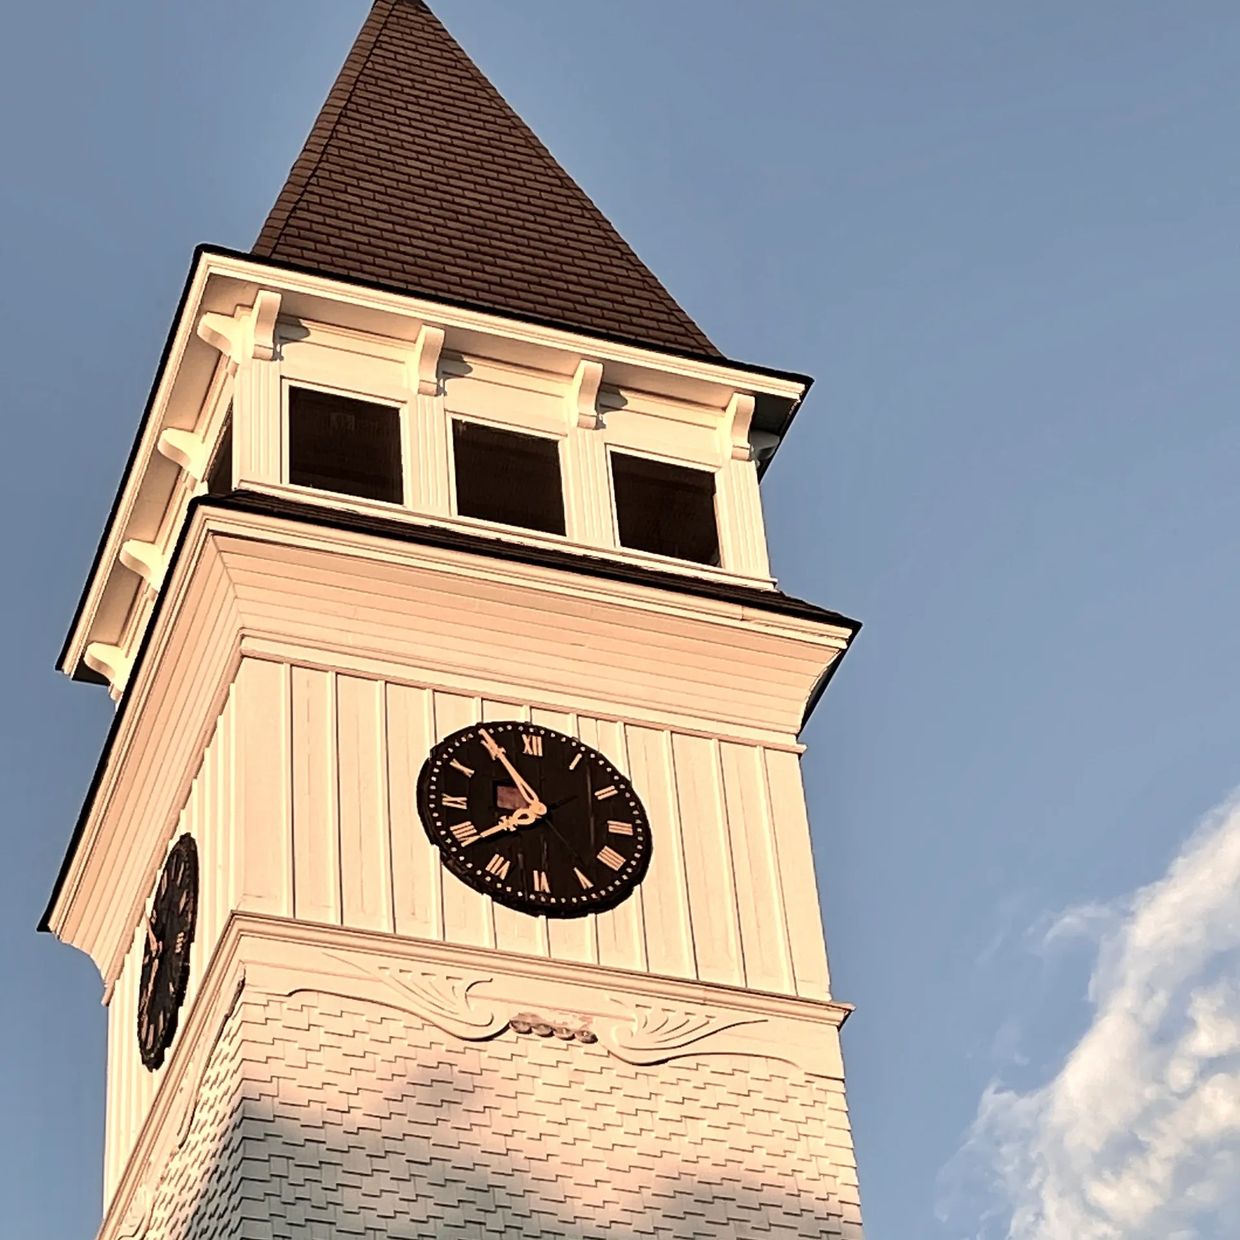 Hollis Town Hall steeple